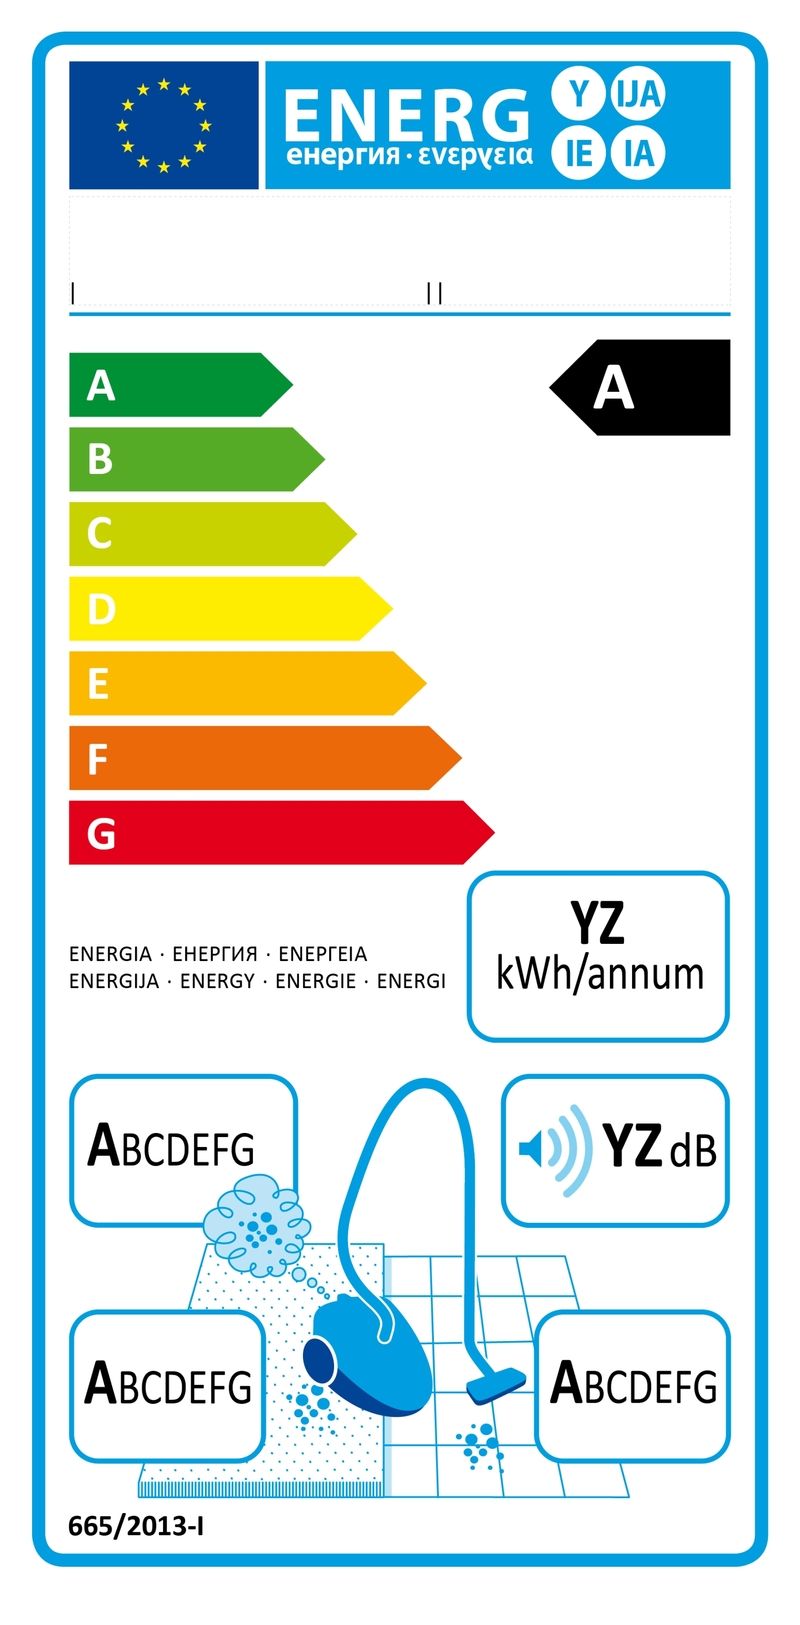 Čistý štítek pro vysavače. Šipky ukazují energetickou třídu, pod nimi v obdélníčku vpravo je údaj o roční spotřebě, pod ním informace o emisích a hlučnosti a úplně dole účinnost vysávání koberců (vlevo) a pevných podlah.